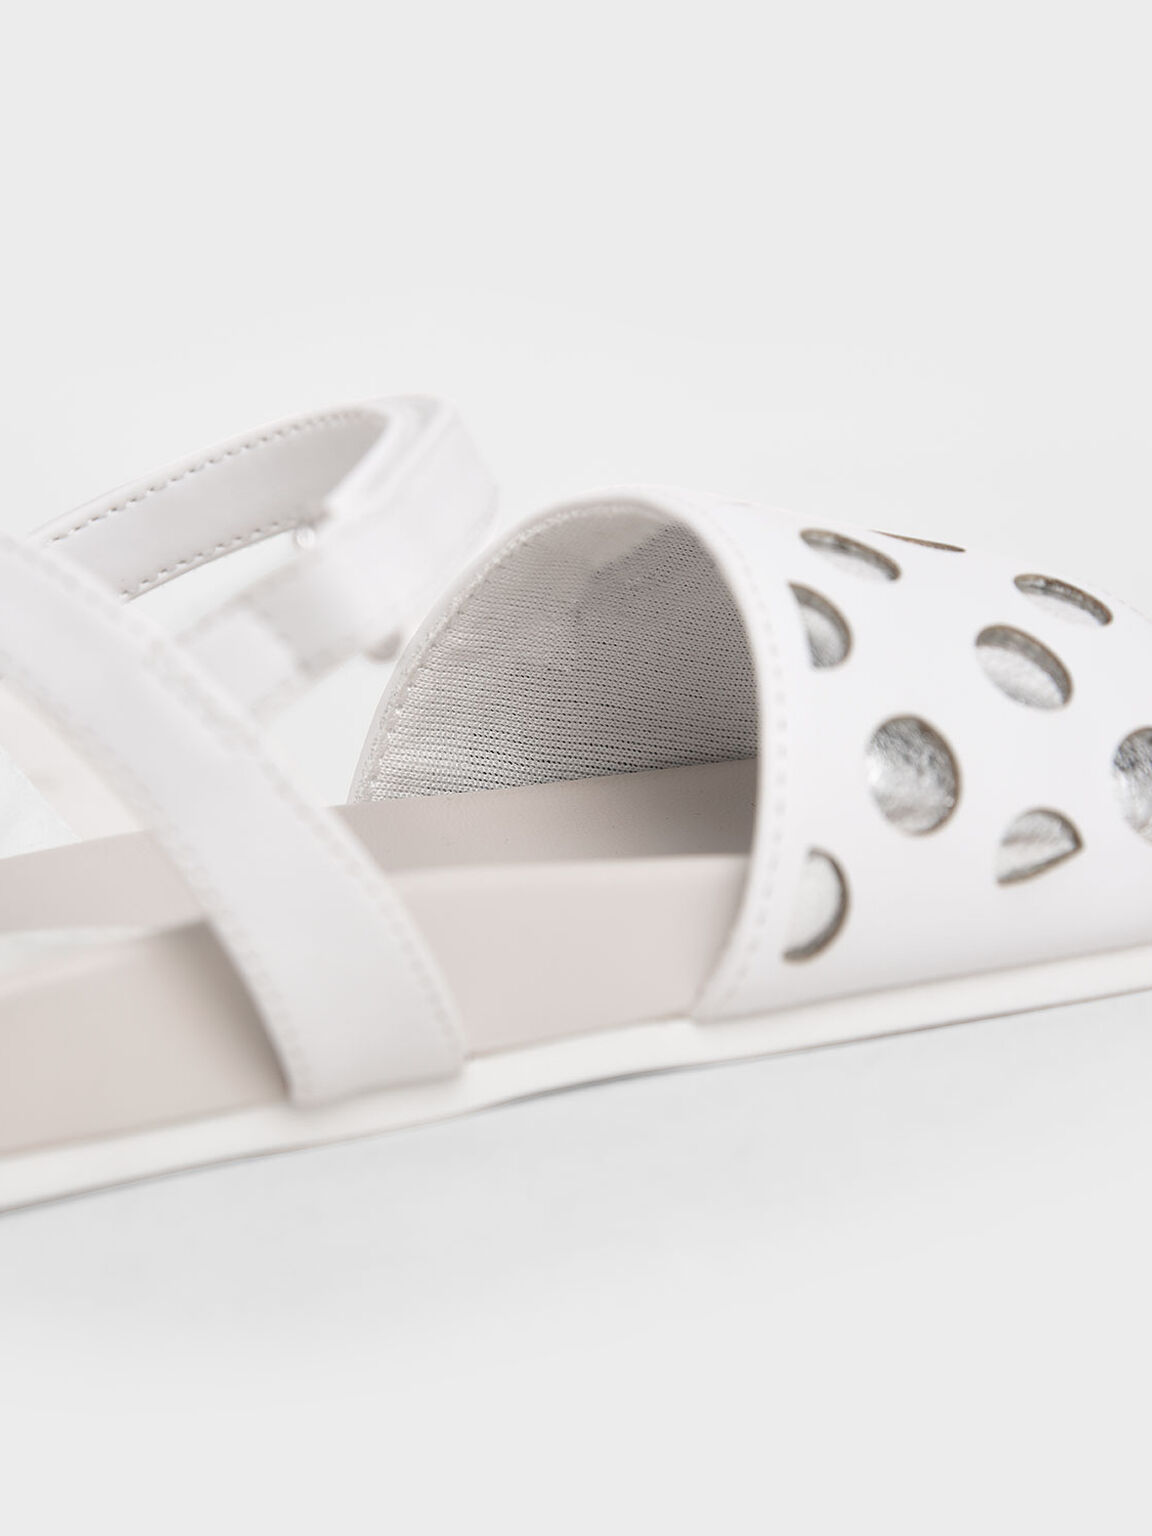 Girls&apos; Laser-Cut Sandals, White, hi-res